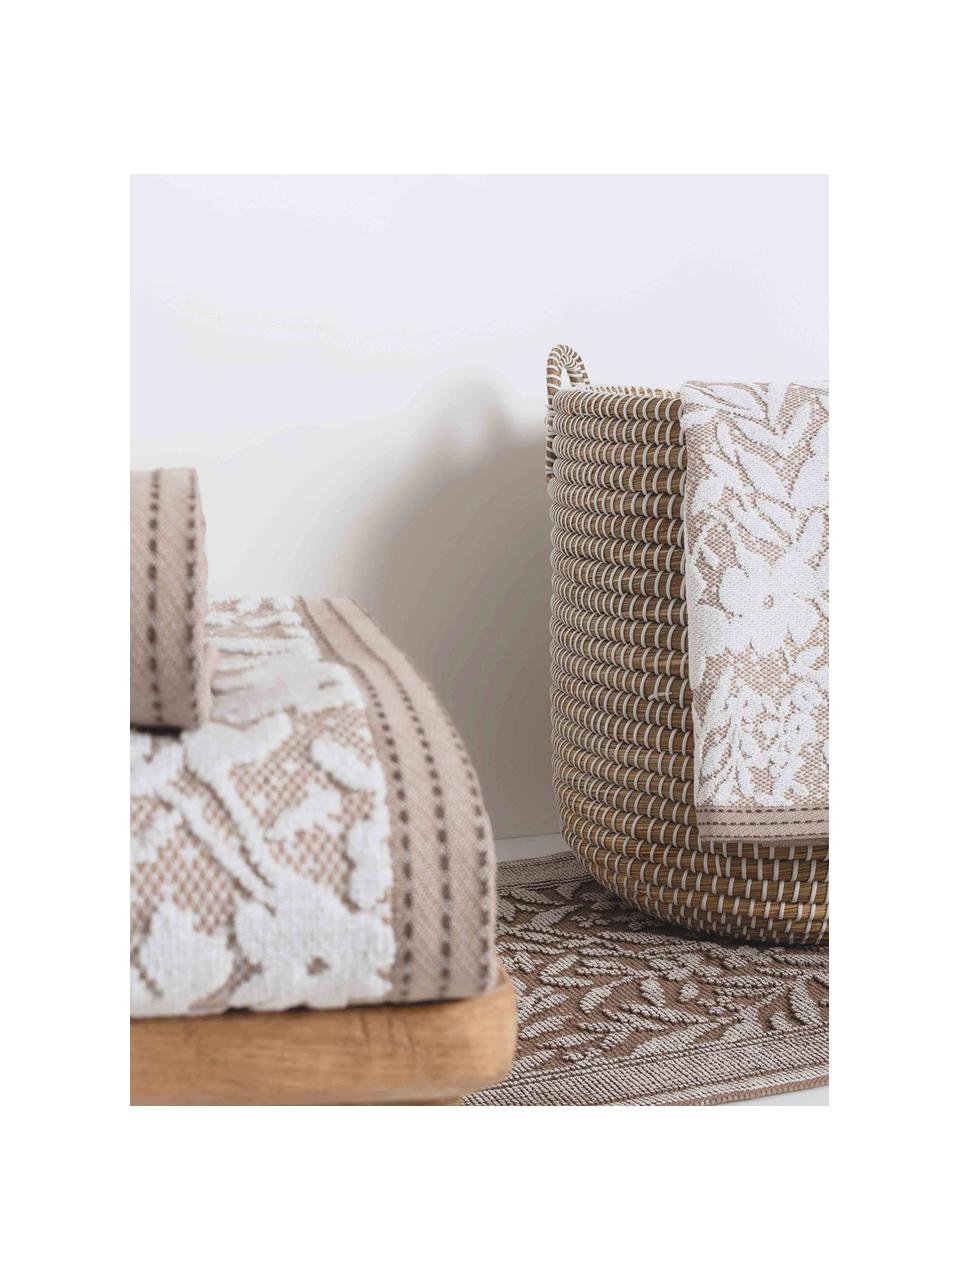 Handdoek Matiss in verschillende formaten, met hoog-laag patroon met bloemen, Wit, taupe, Handdoek, B 50 x L 100 cm